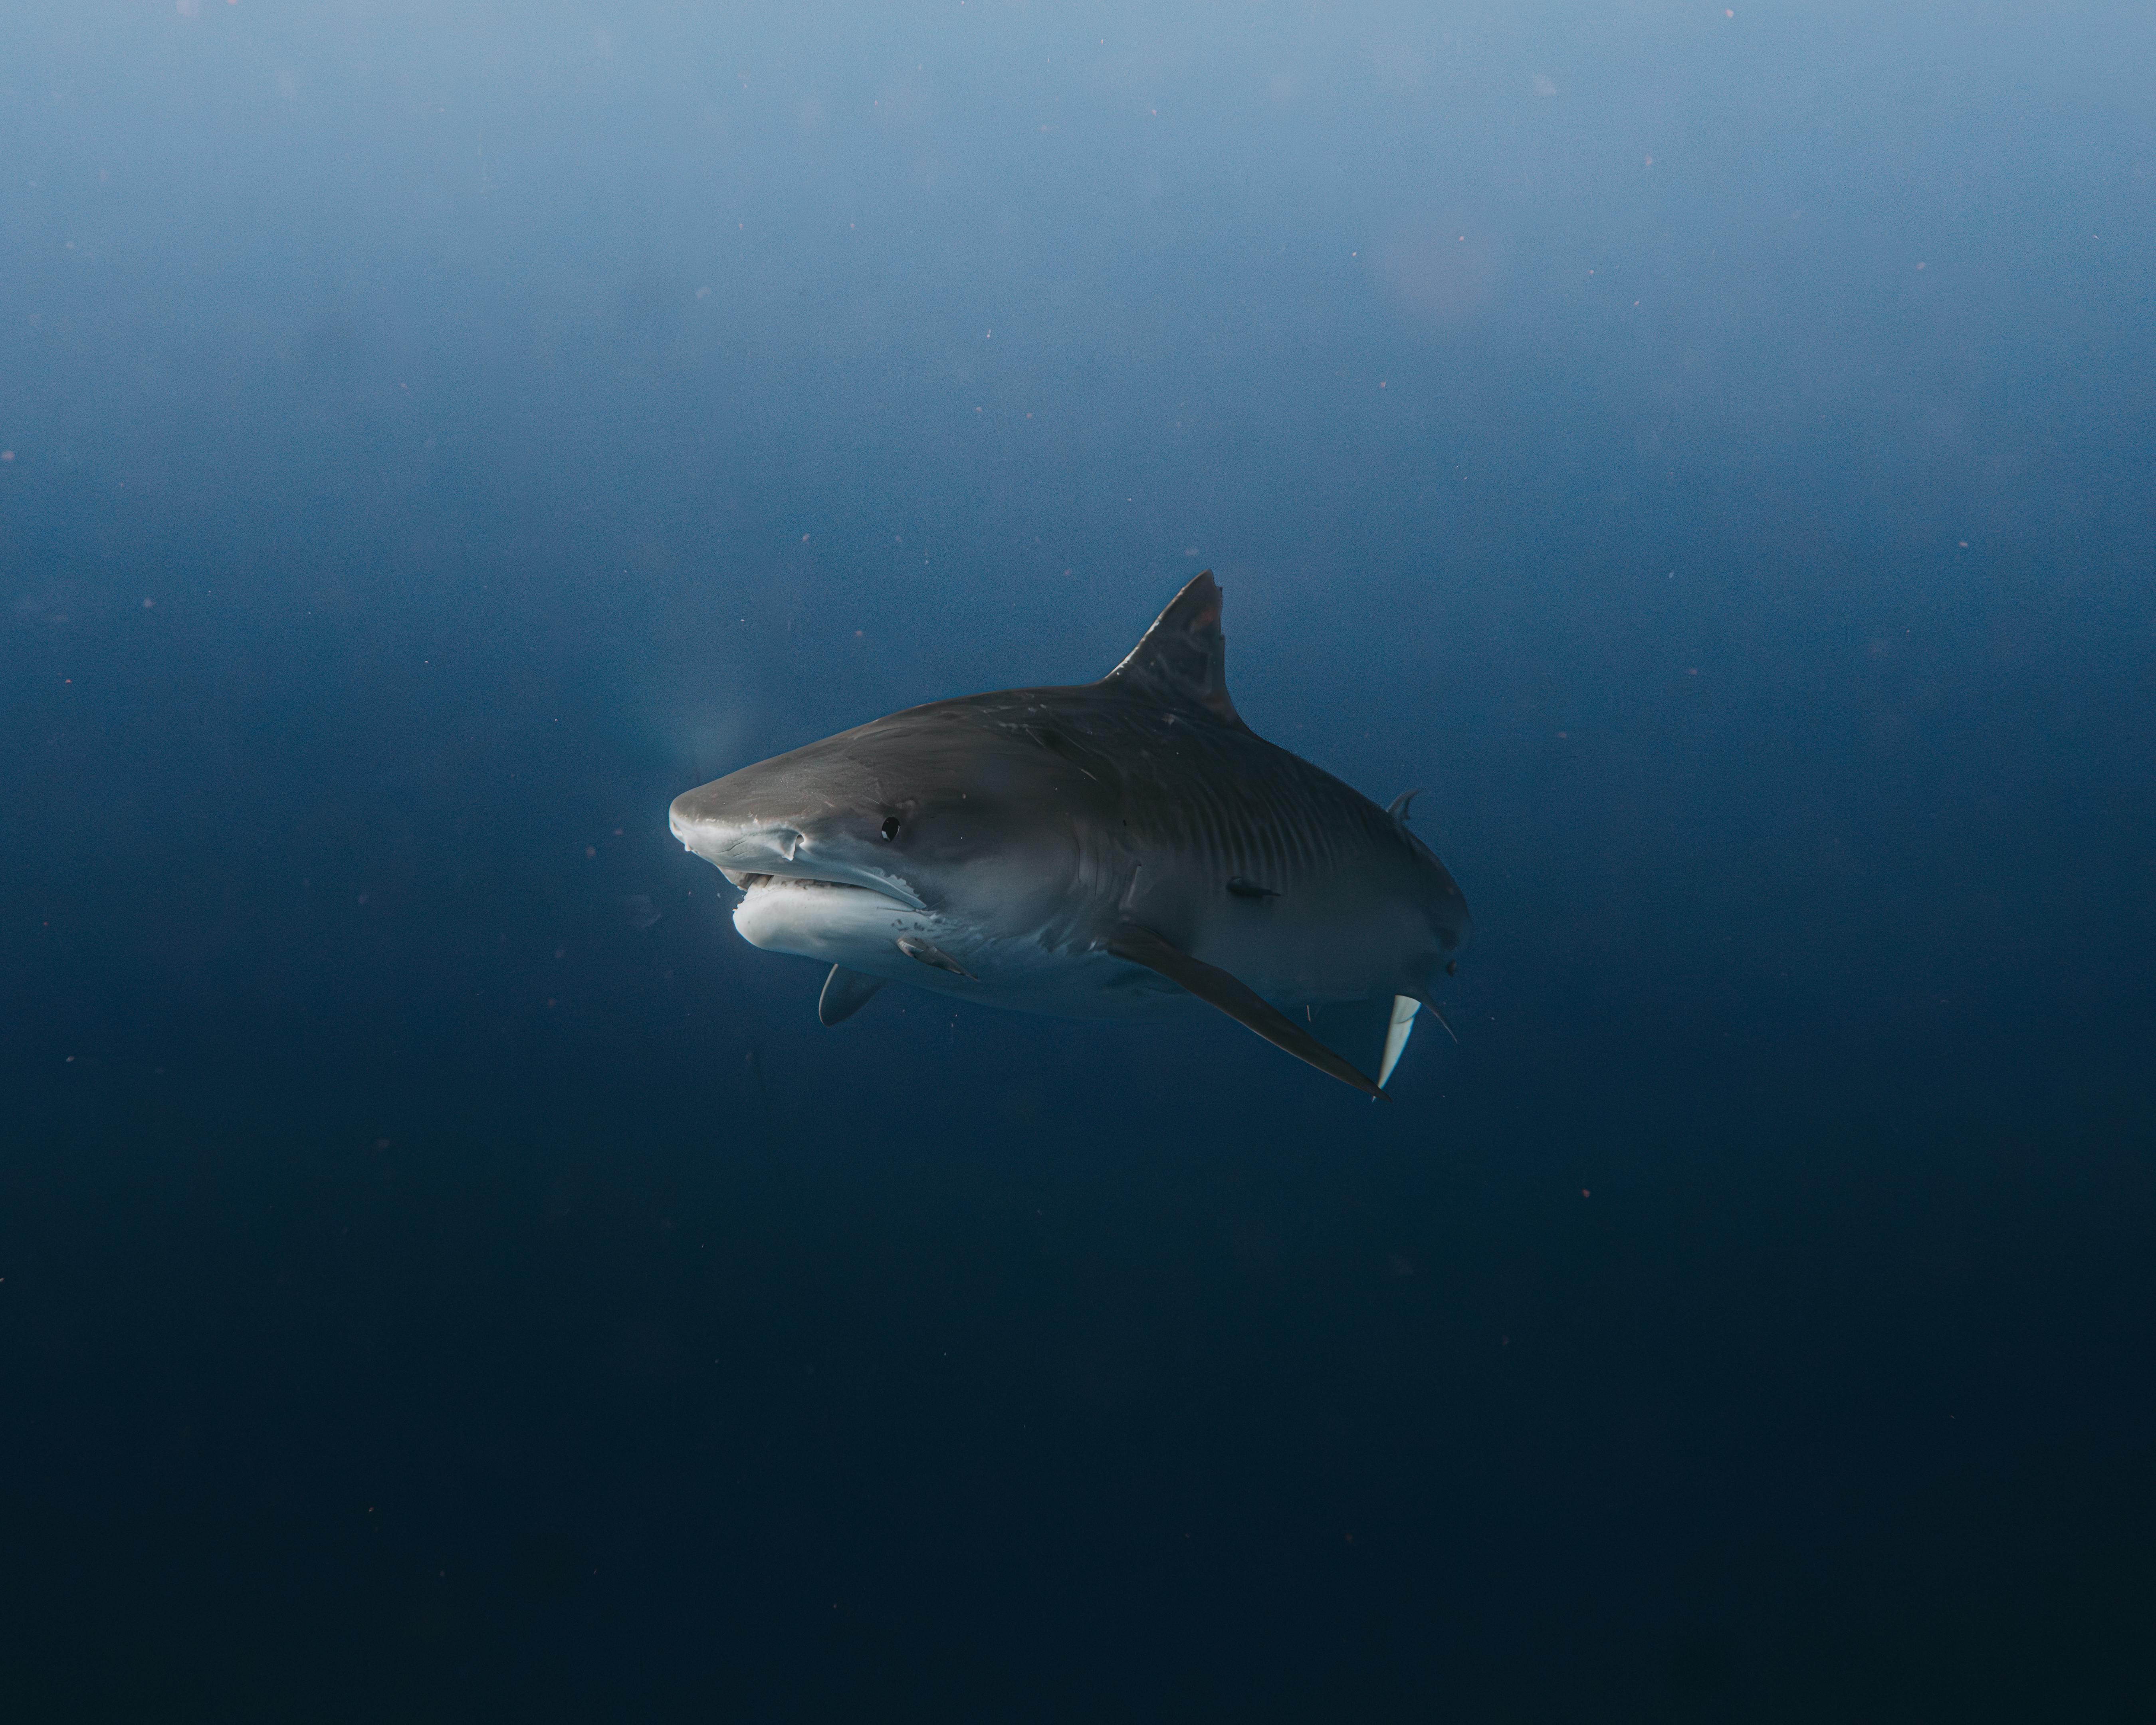 Shark Swimming Underwater · Free Stock Photo